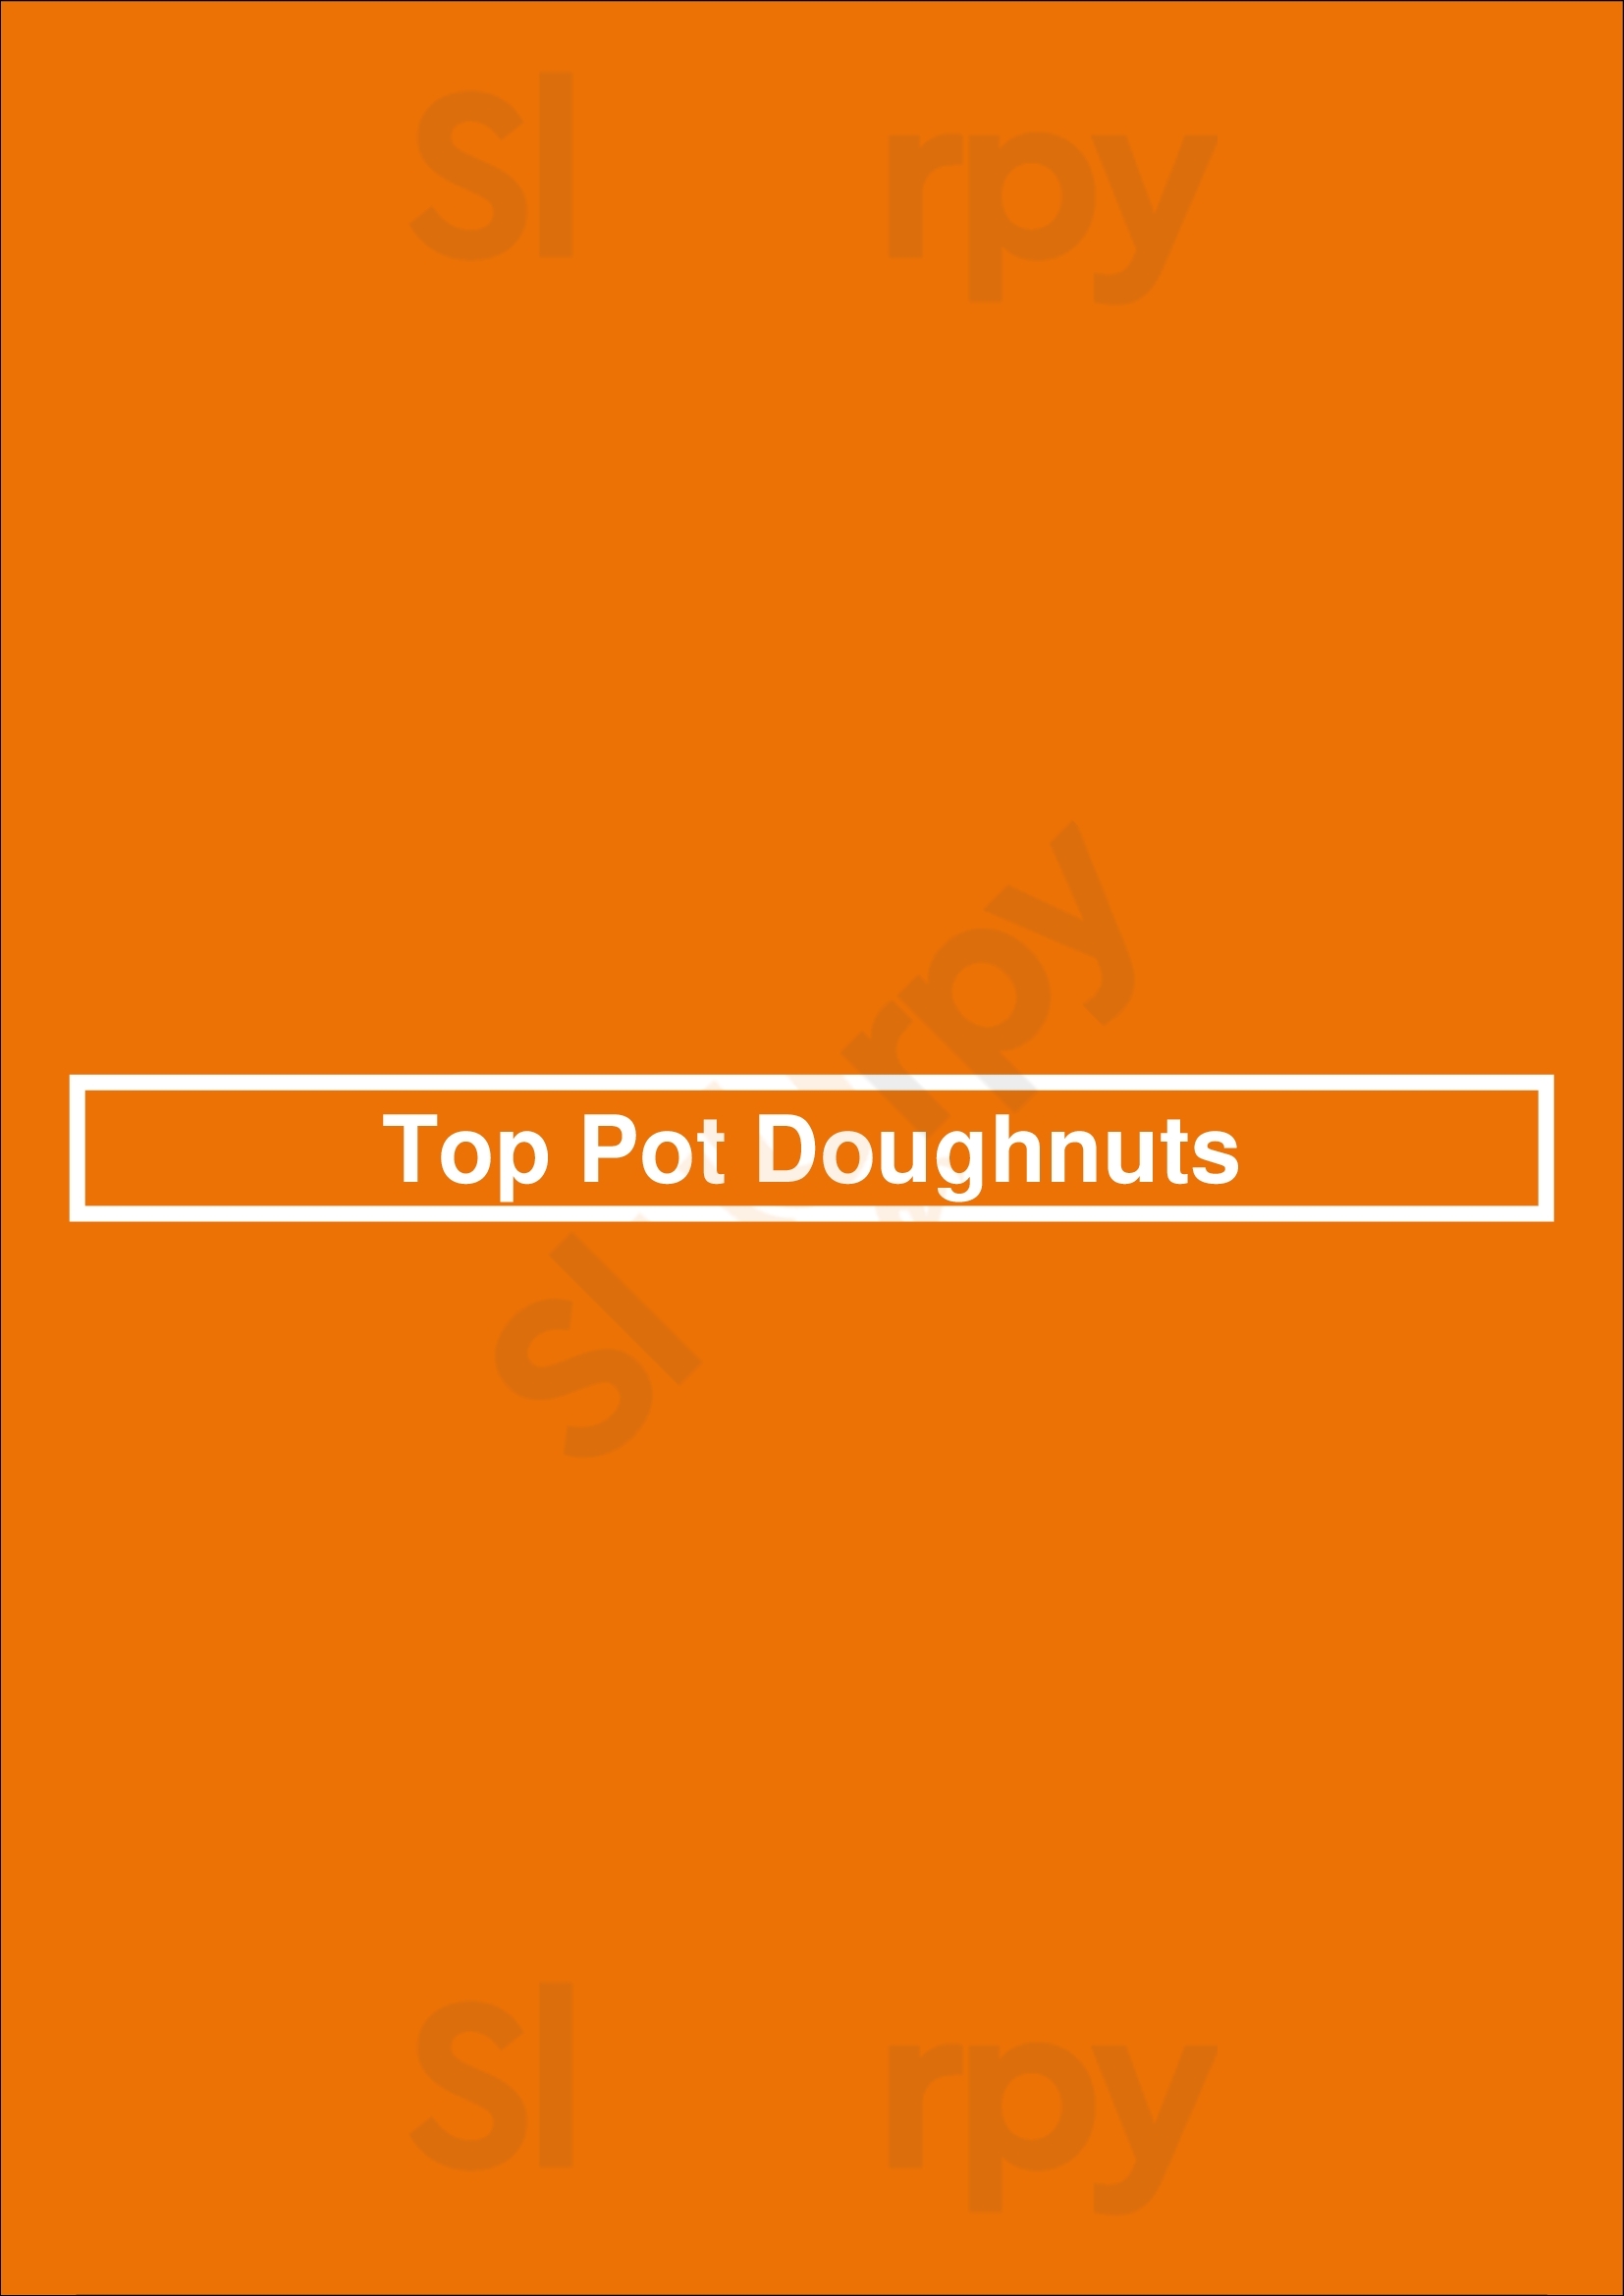 Top Pot Doughnuts Seattle Menu - 1